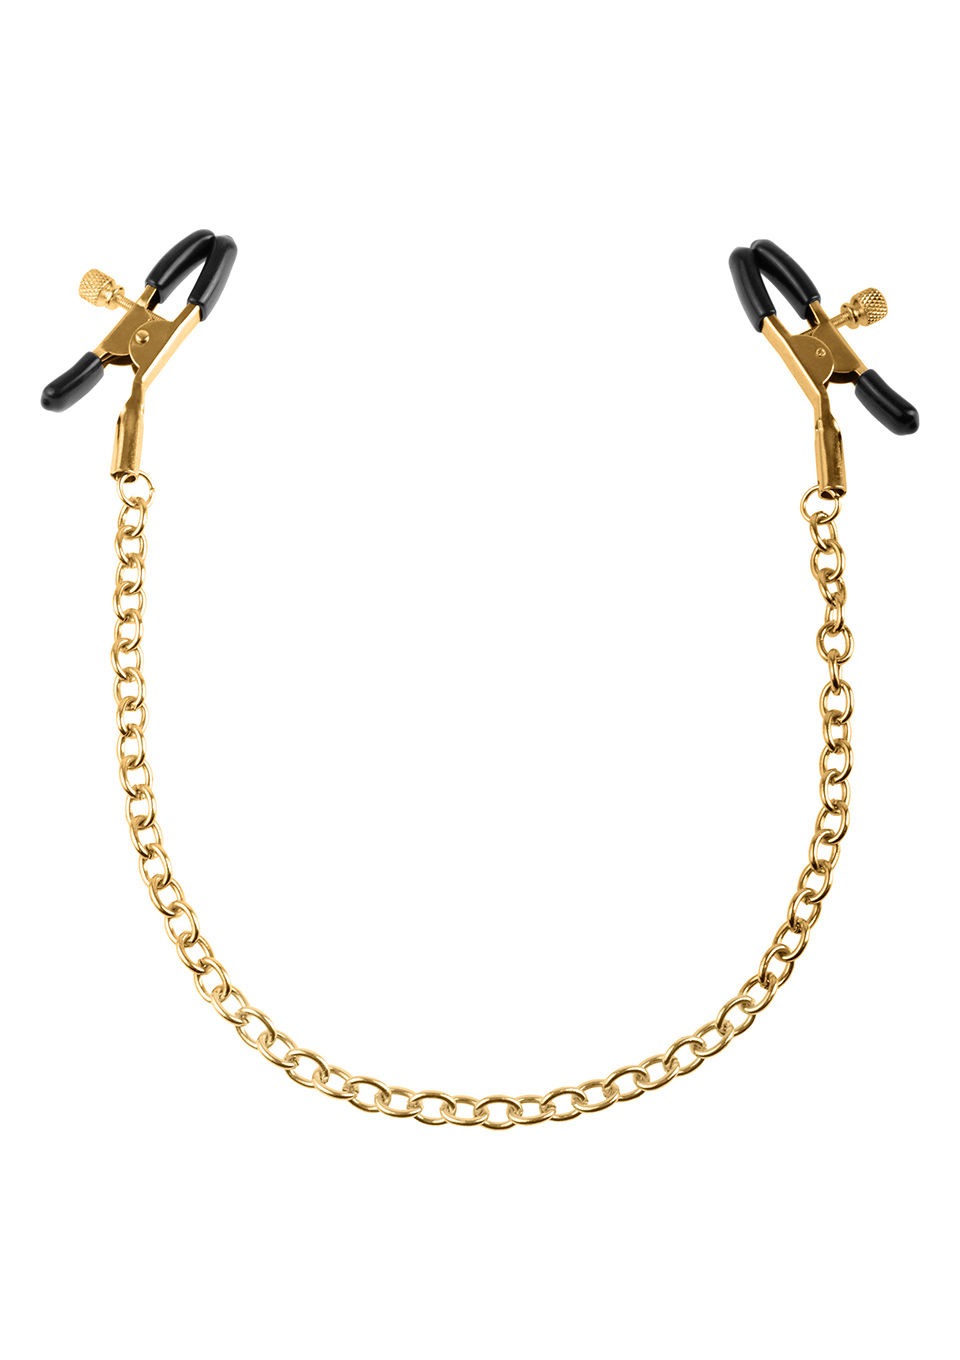 Зажимы для сосков Ff Gold Nipple Chain Clamps